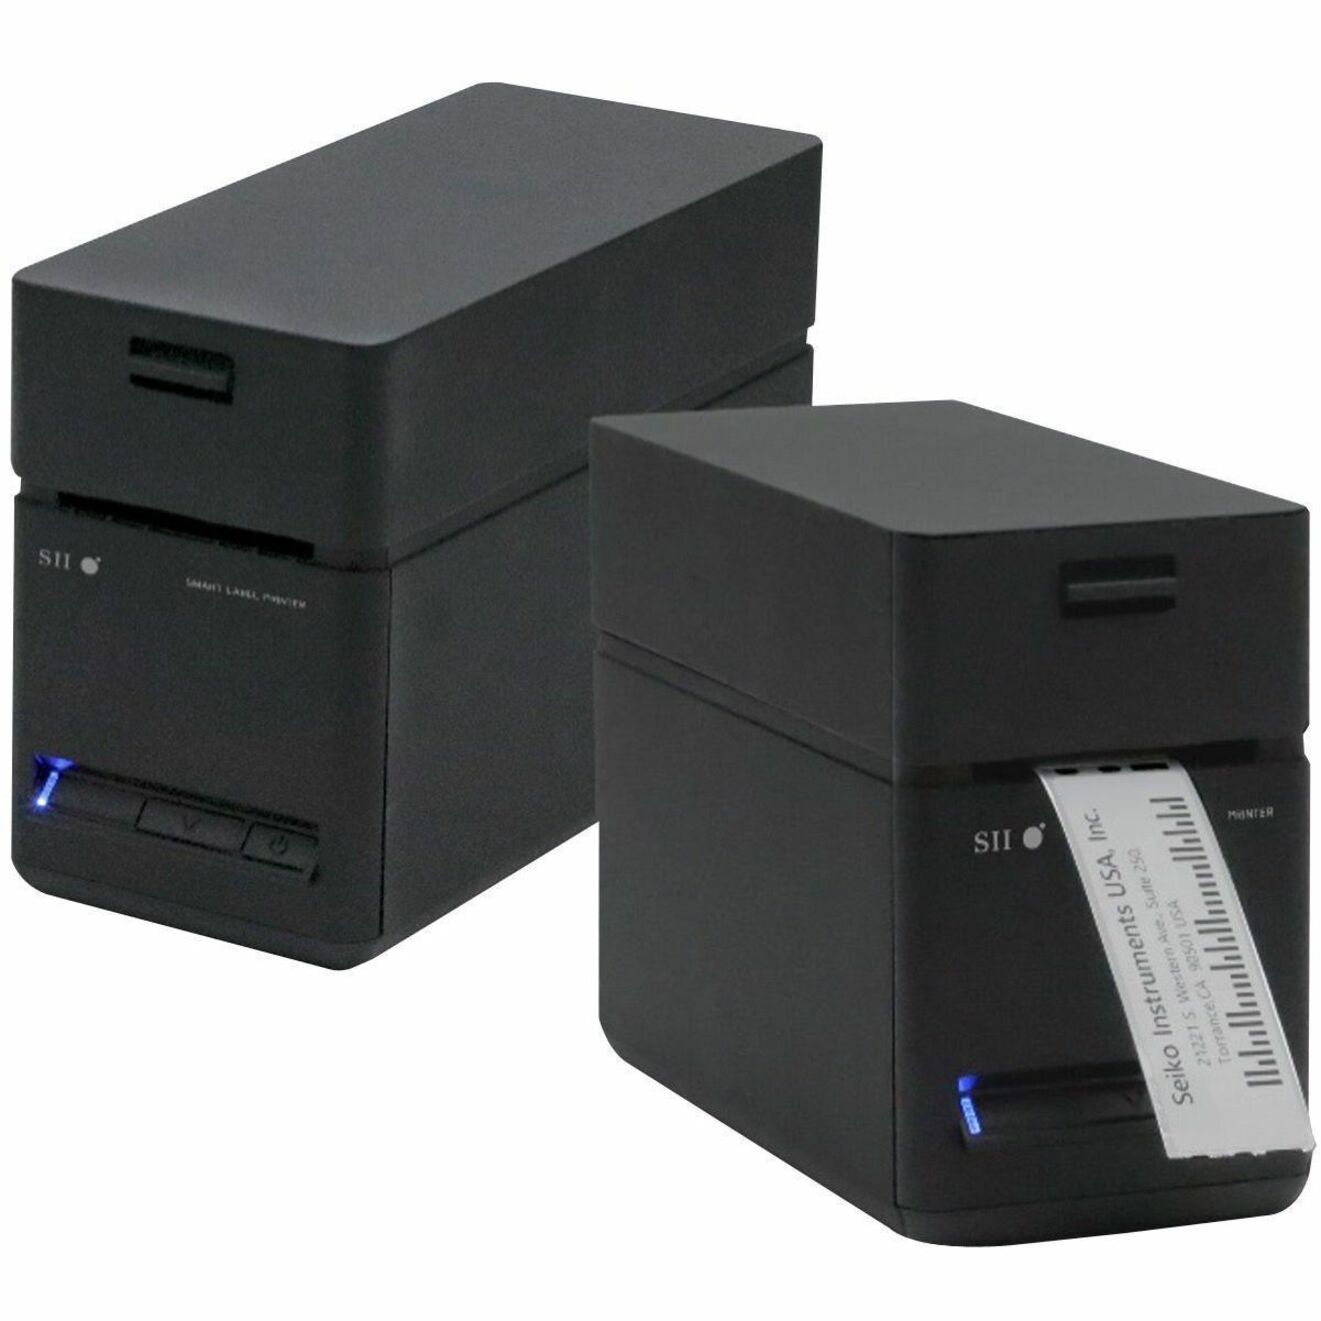 Seiko SLP-720RT-W2FU1-03 SLP720RT Direct Thermal Printer, Compact, Monochrome, 2.28 Print Width, Wireless LAN